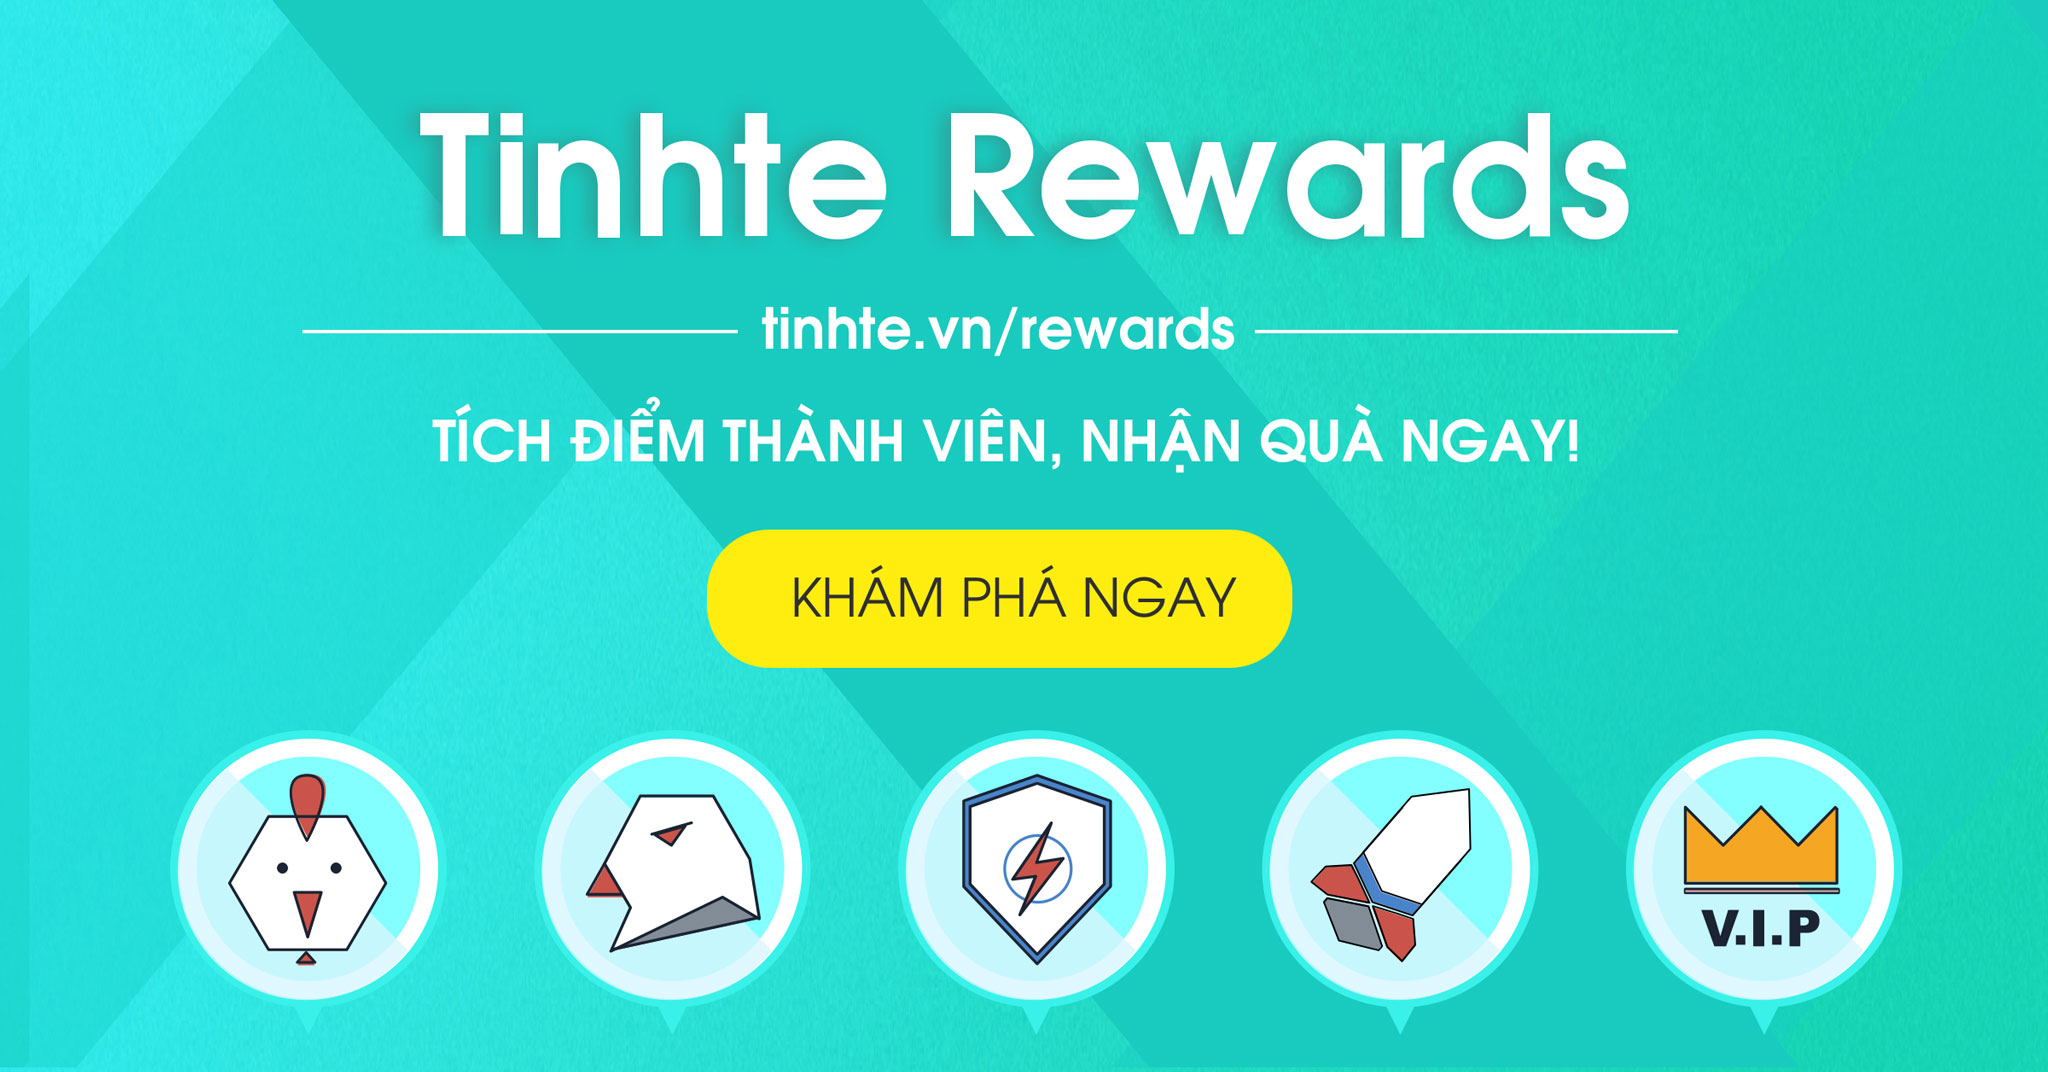 tinhte_rewards.jpg